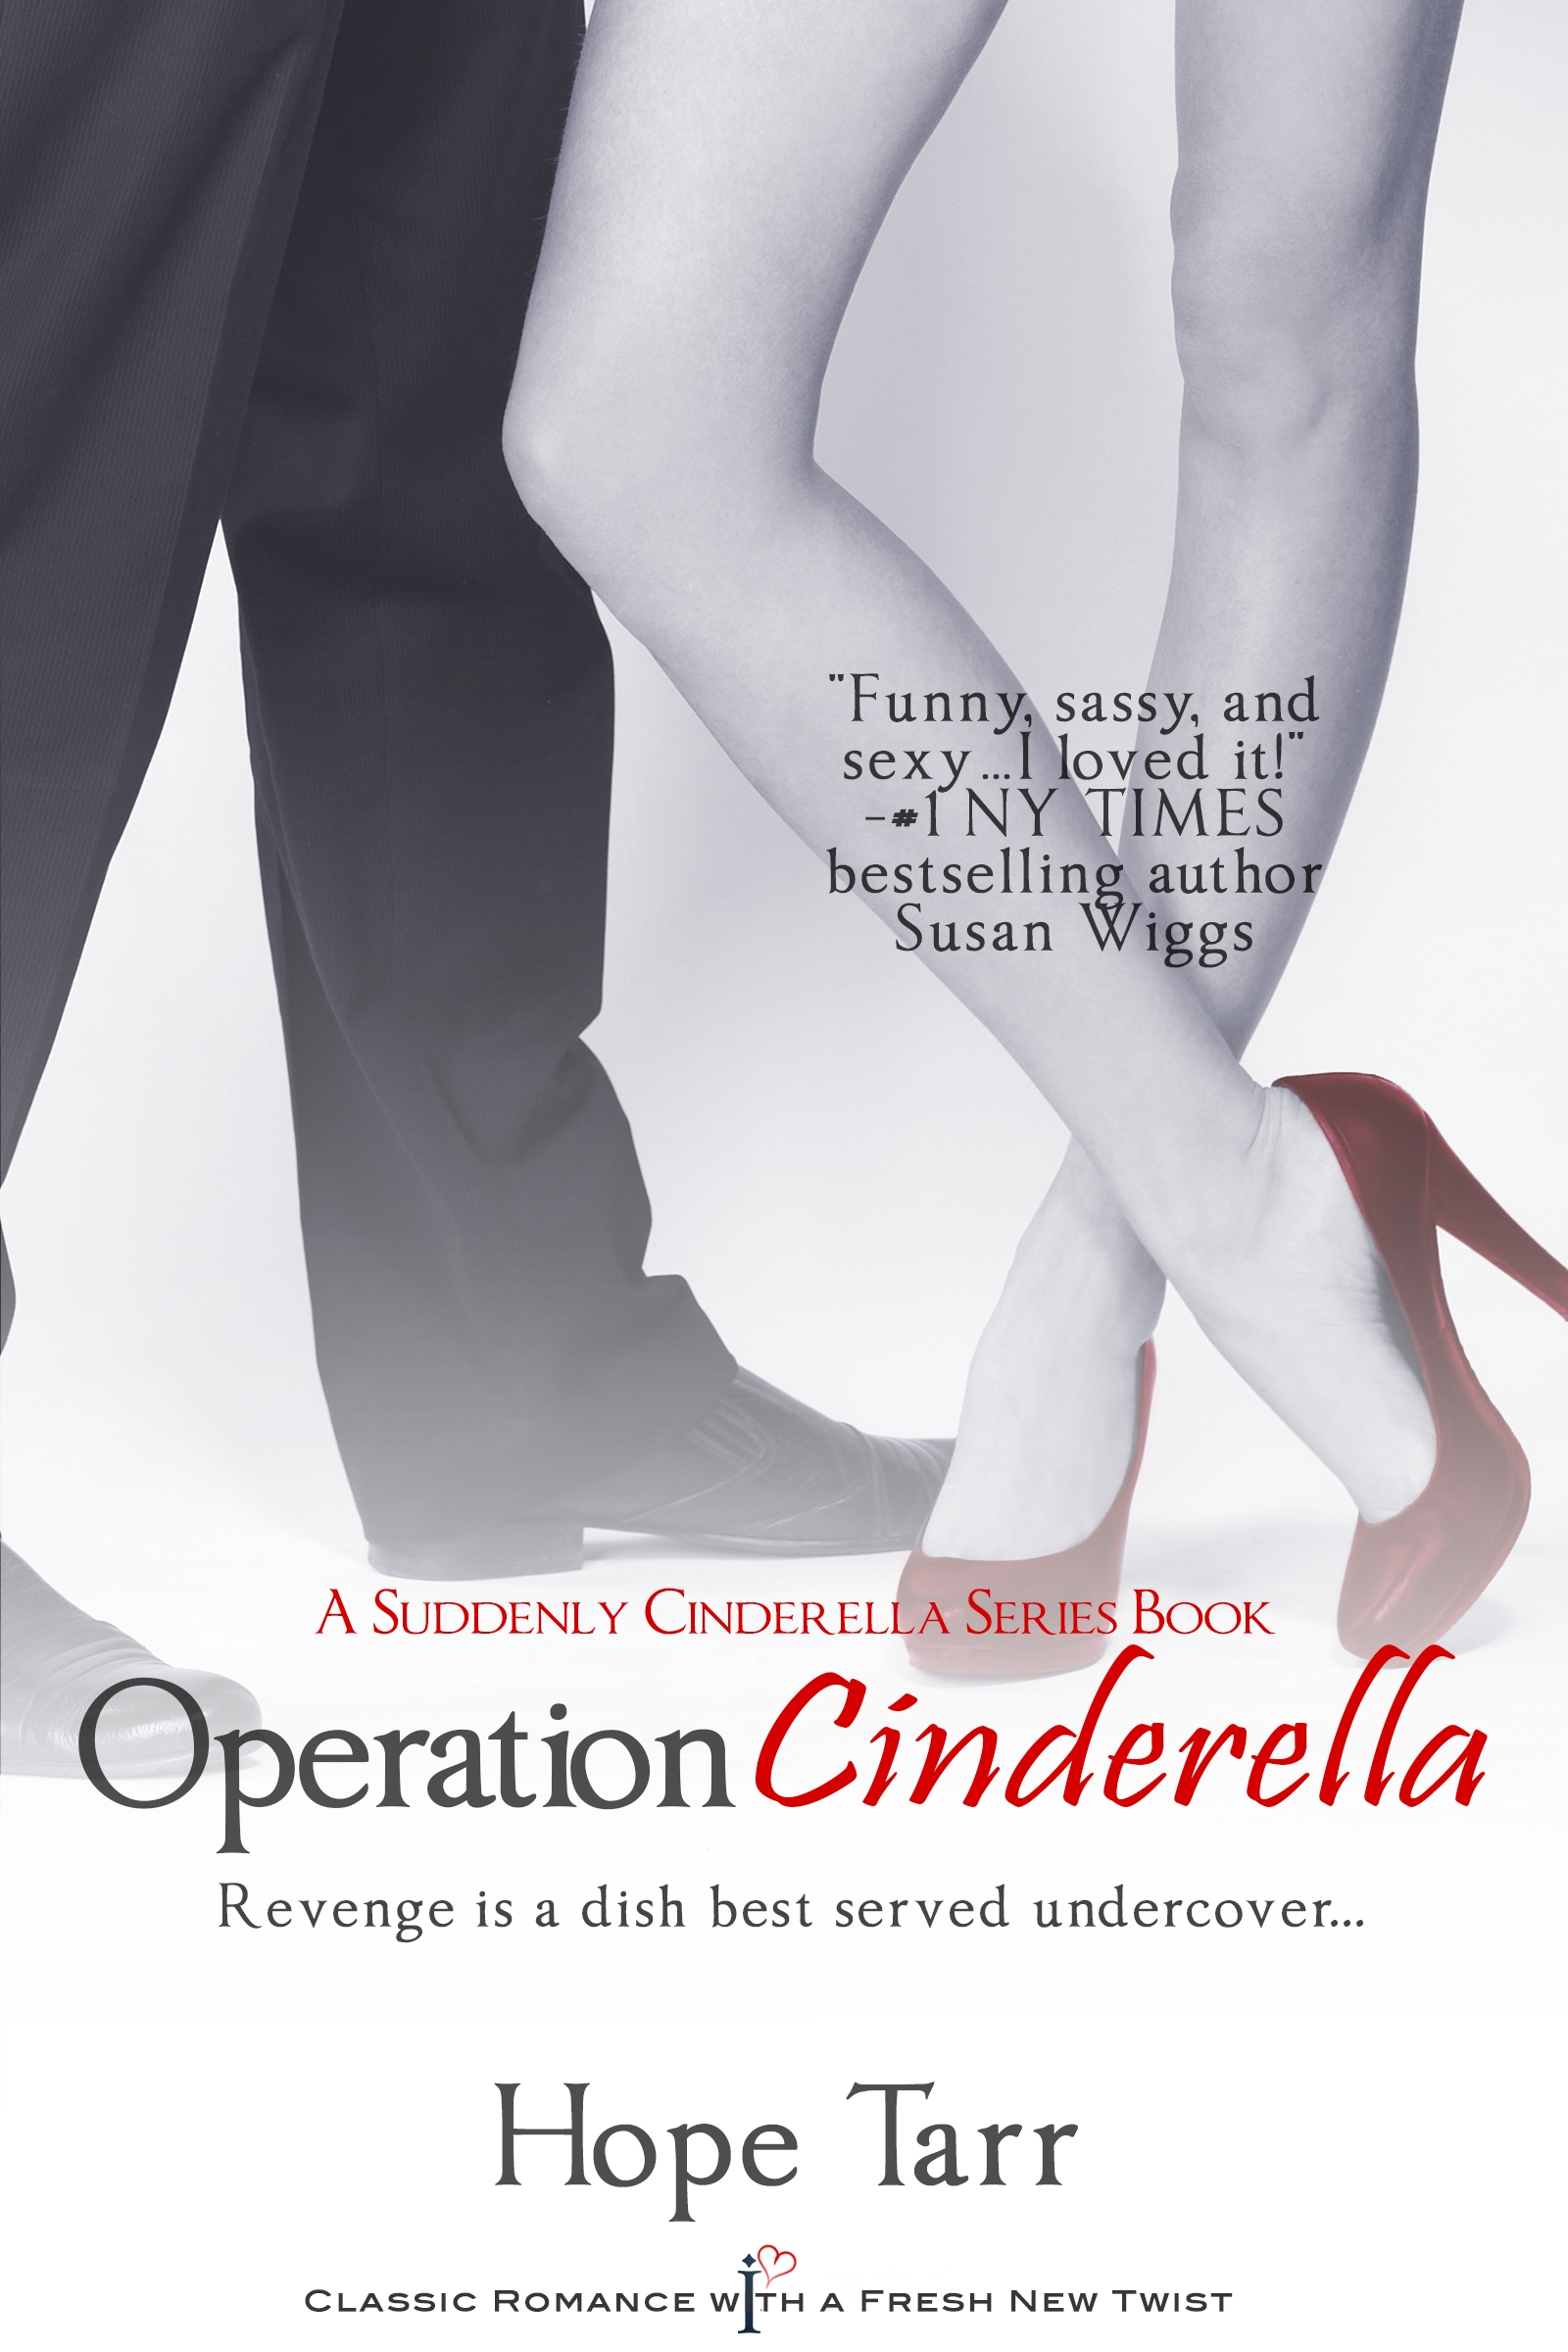 Operation_Cinderella_cvr_RV_July 2013